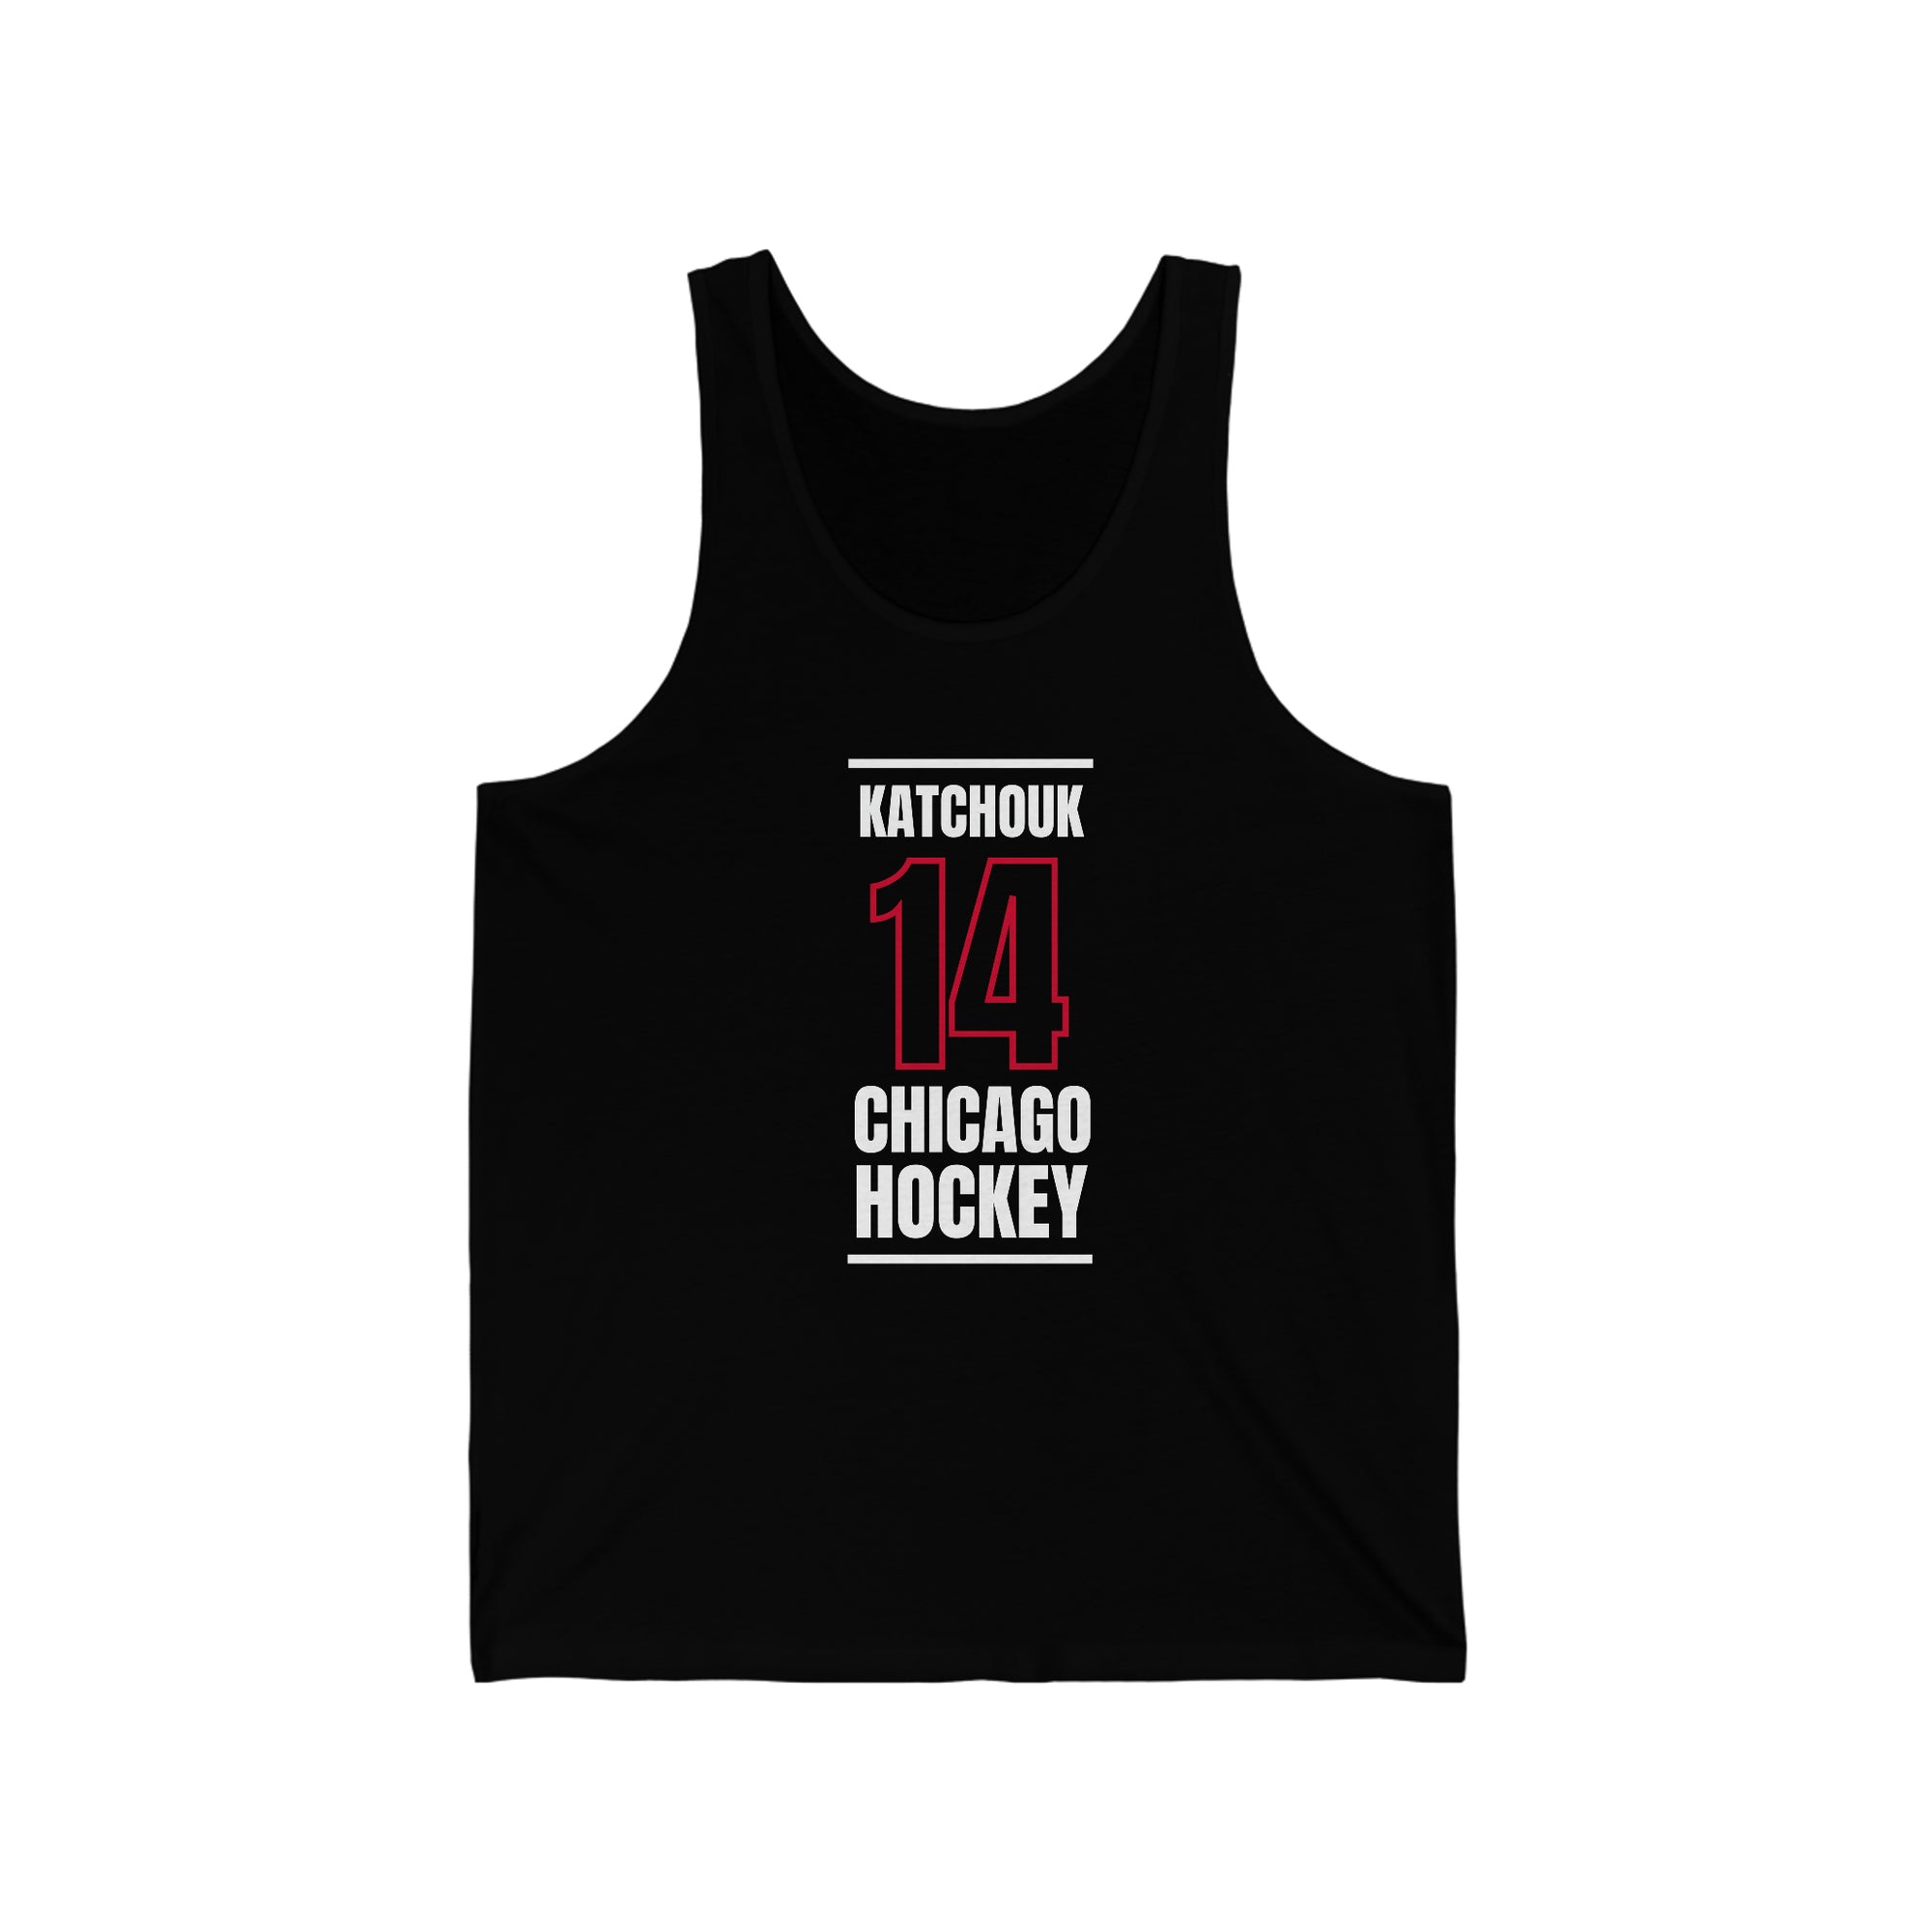 Katchouk 14 Chicago Hockey Black Vertical Design Unisex Jersey Tank Top